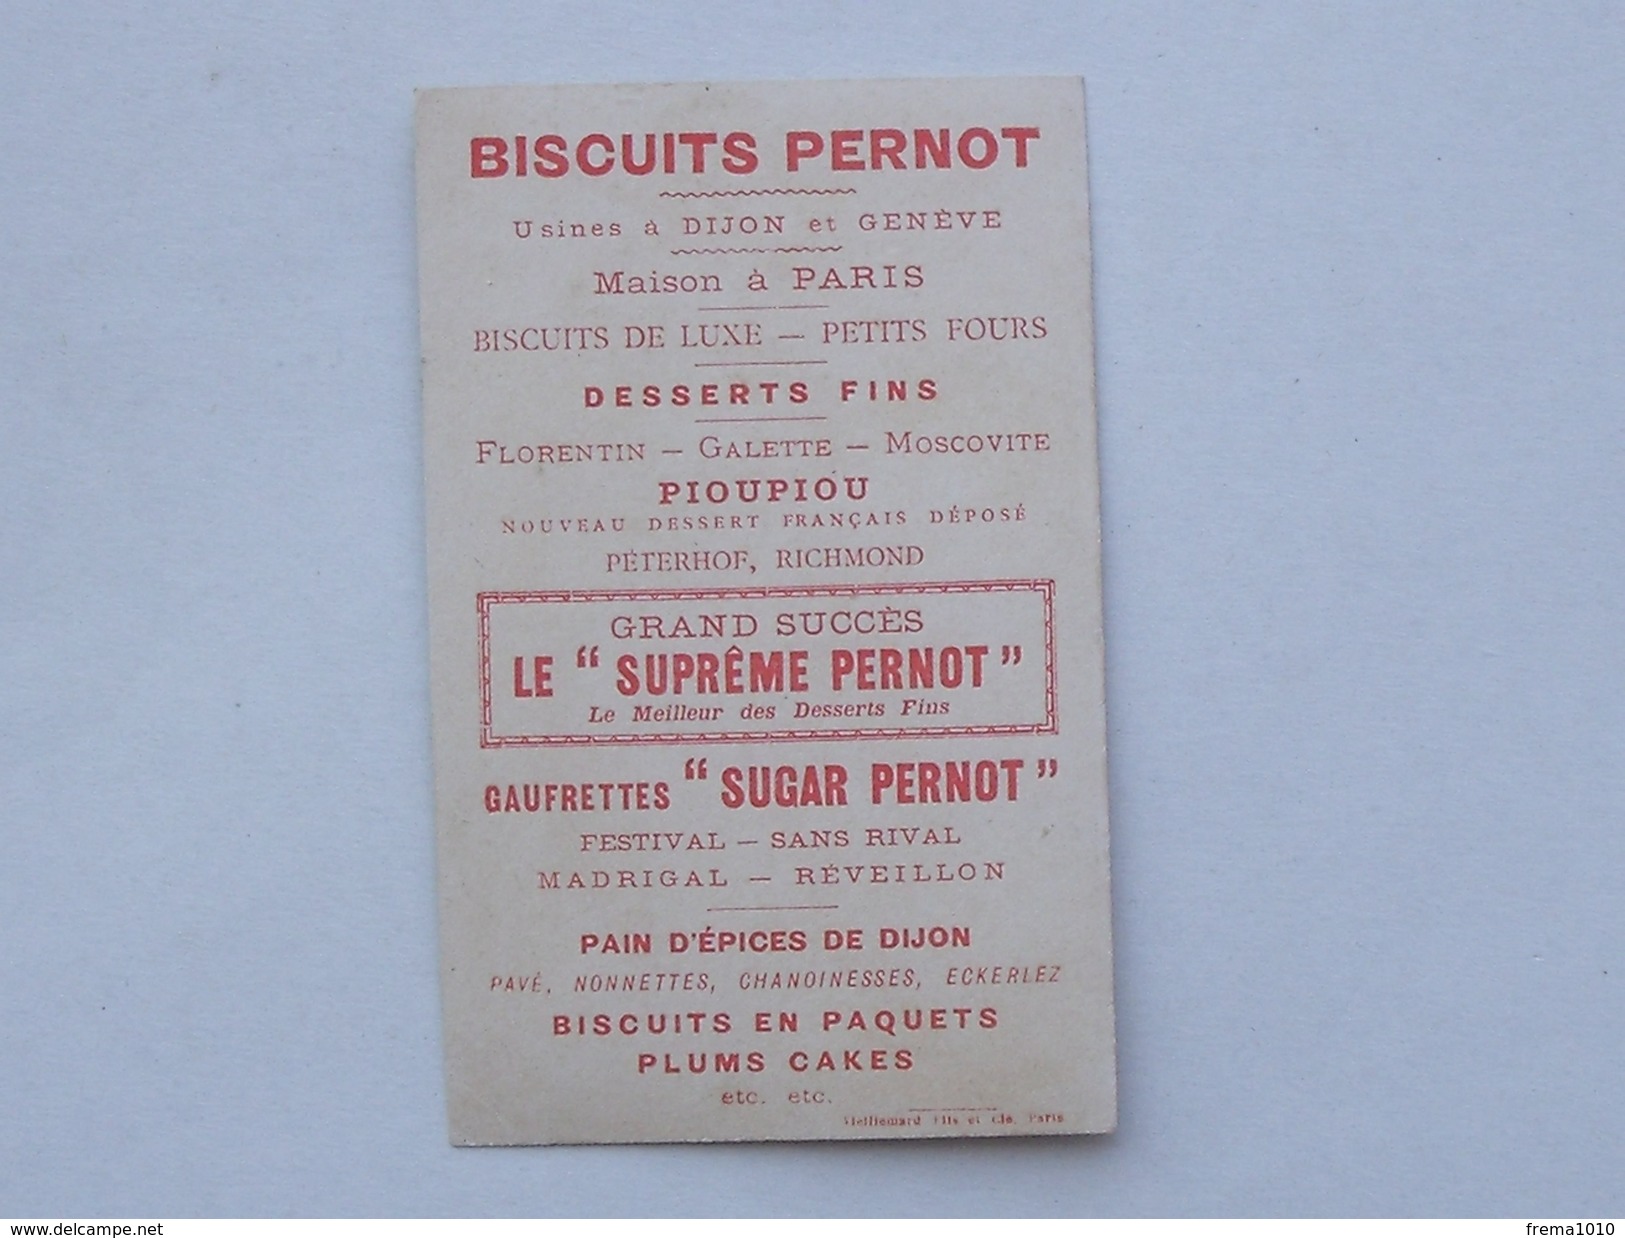 CHROMO Biscuits PERNOT DIJON: 1ére Série Les Costumes - Antiquité & Moyen-Age N°38 Espagnol Piquiers - VIEILLEMARD - Pernot